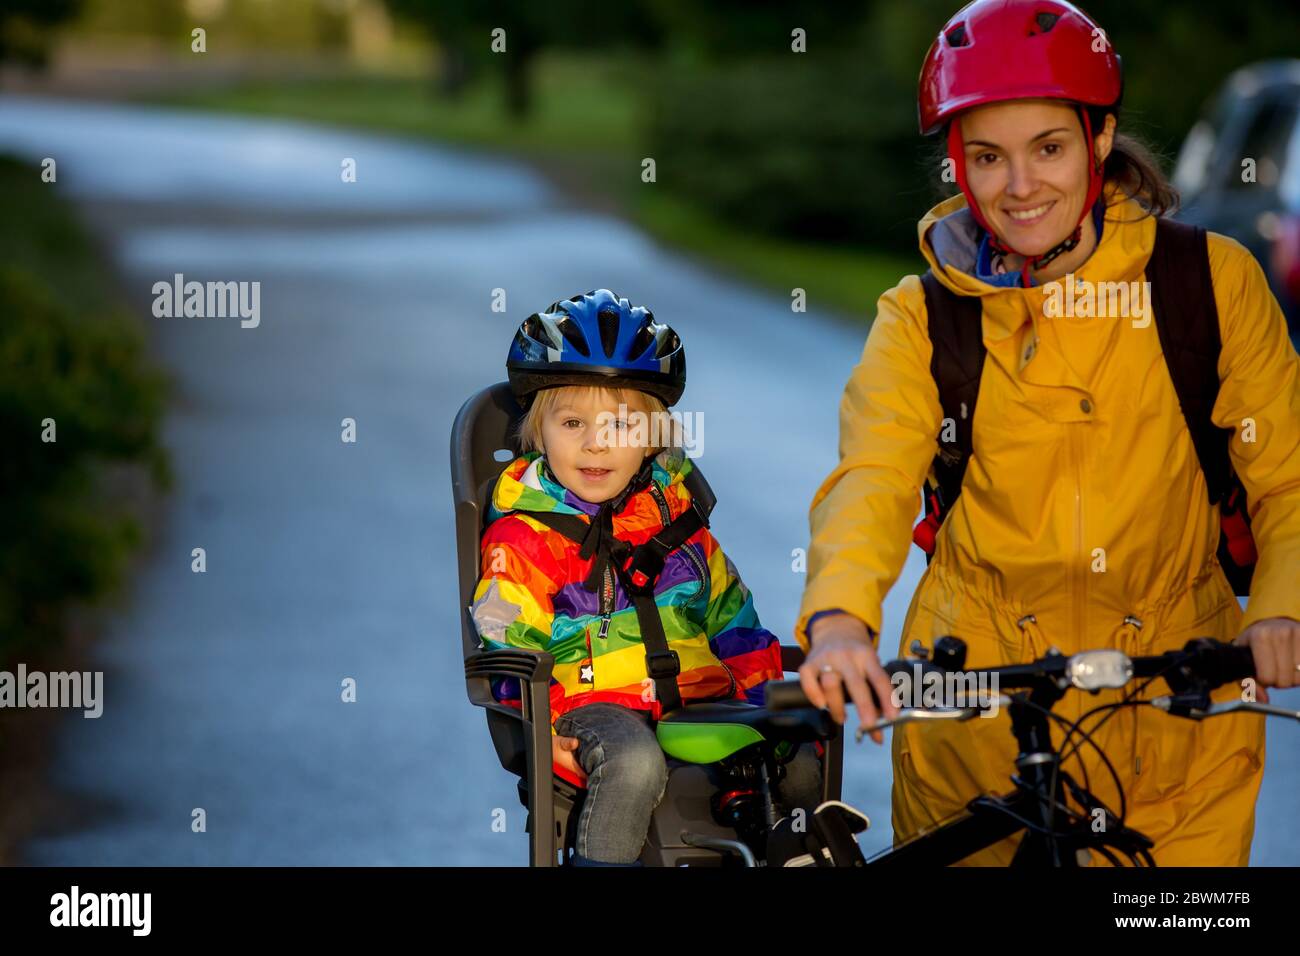 Mutter und Kind, Fahrrad fahren, Junge sitzen im Fahrradsitz, genießen  Reise mit Mama, Sicherheit zuerst, Waaring Helme Stockfotografie - Alamy